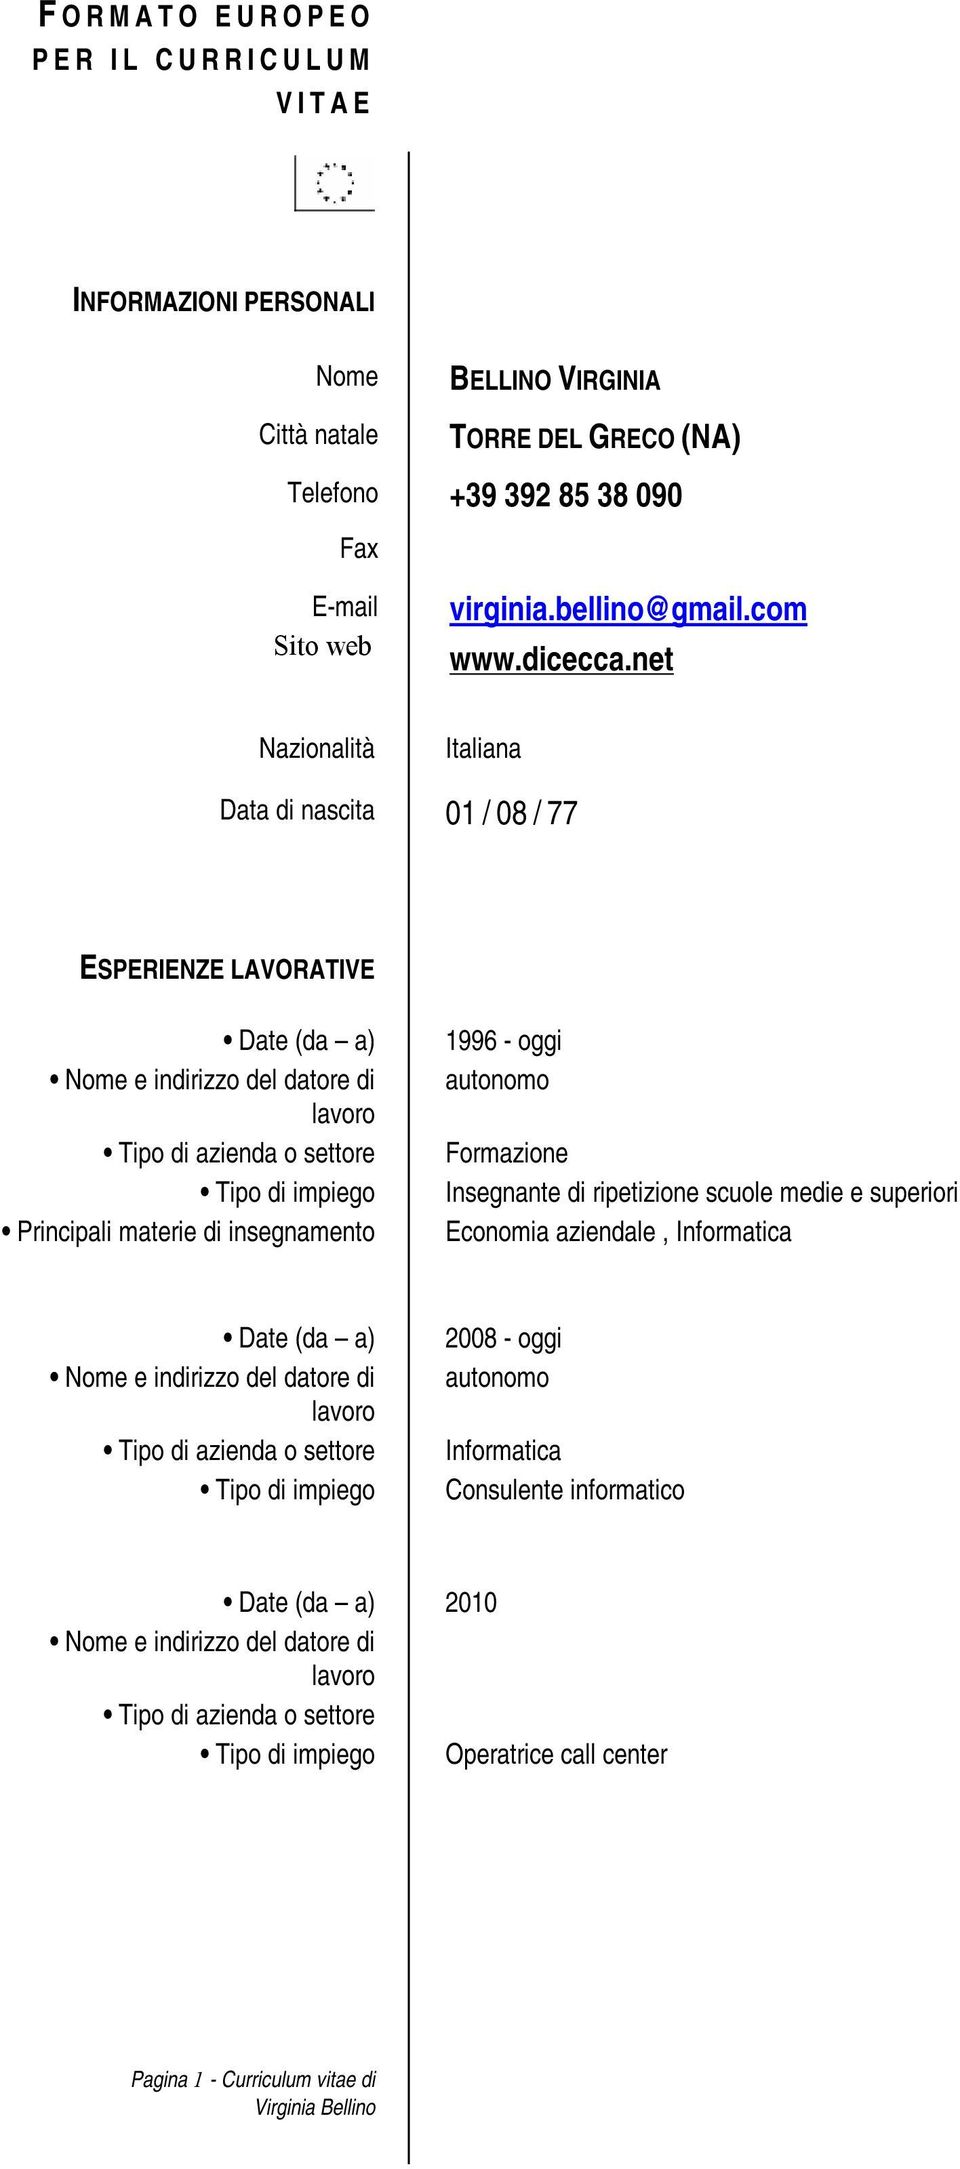 net Nazionalità Italiana Data di nascita 01 / 08 / 77 ESPERIENZE LAVORATIVE Principali materie di insegnamento 1996 - oggi autonomo